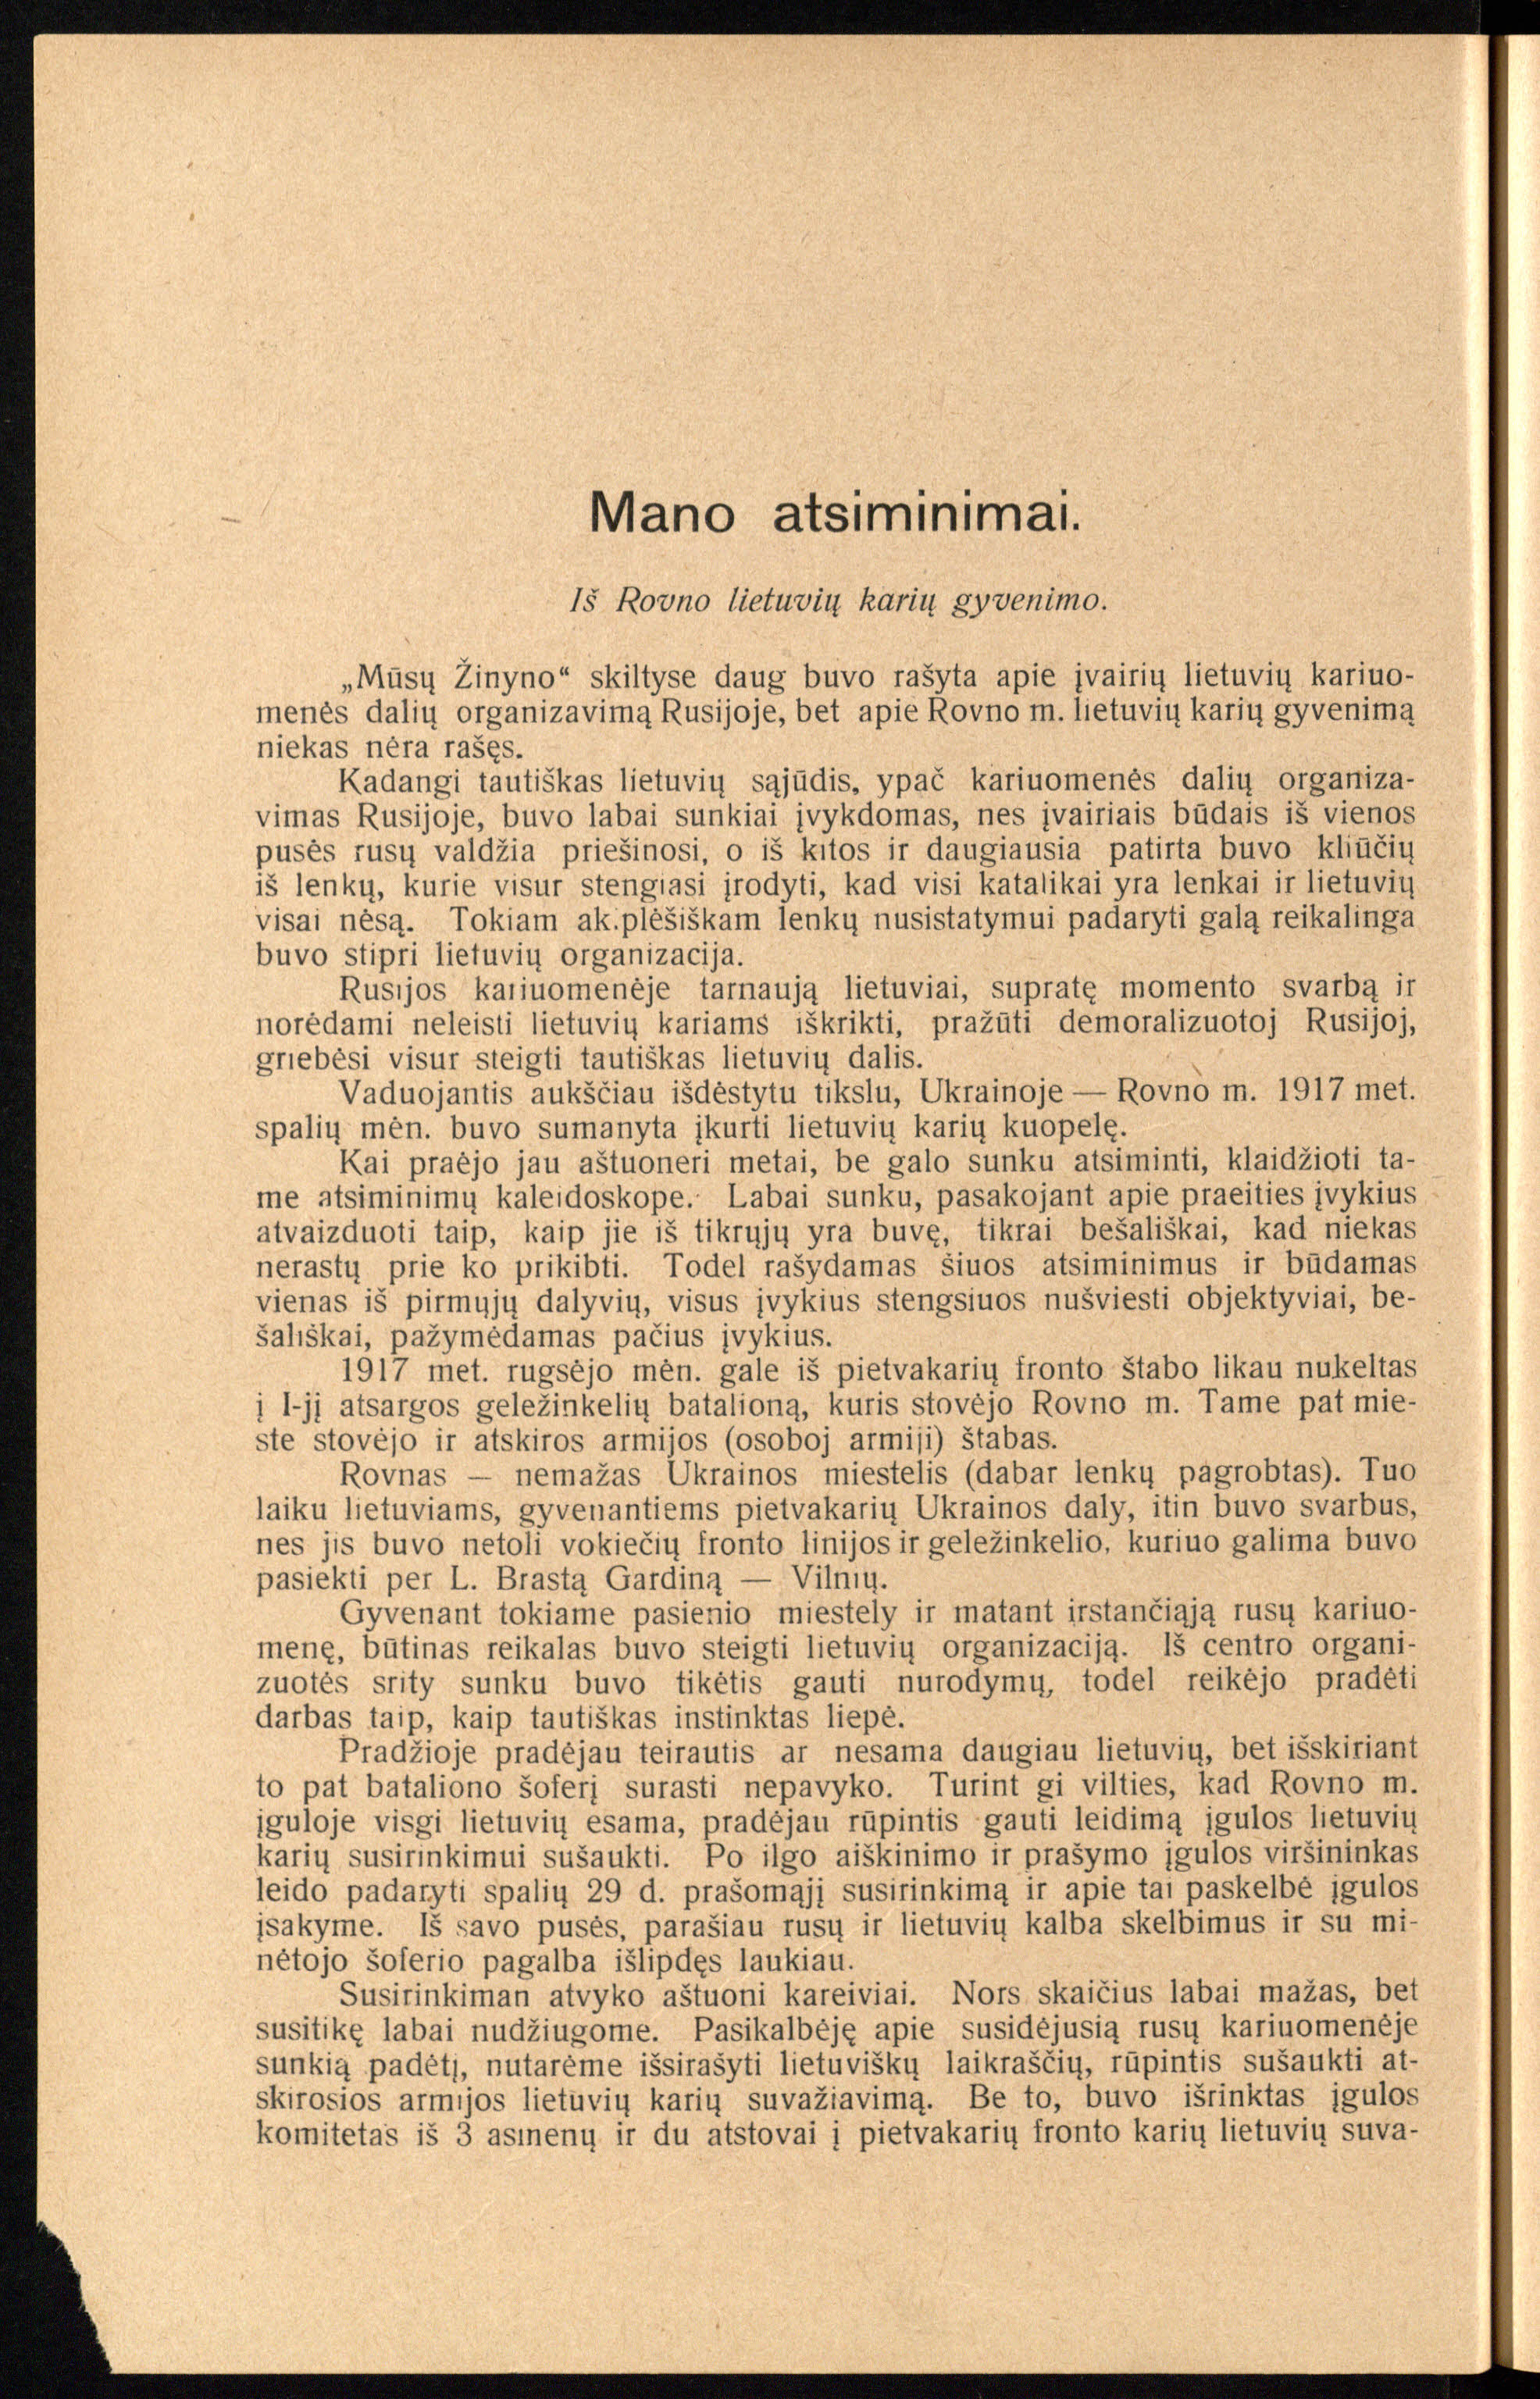 Karo valdininko Prano Briedulio publikacijoje detaliai papasakota bataliono istorija, pateiktas batalione tarnavusių karininkų ir karo valdininkų sąrašas